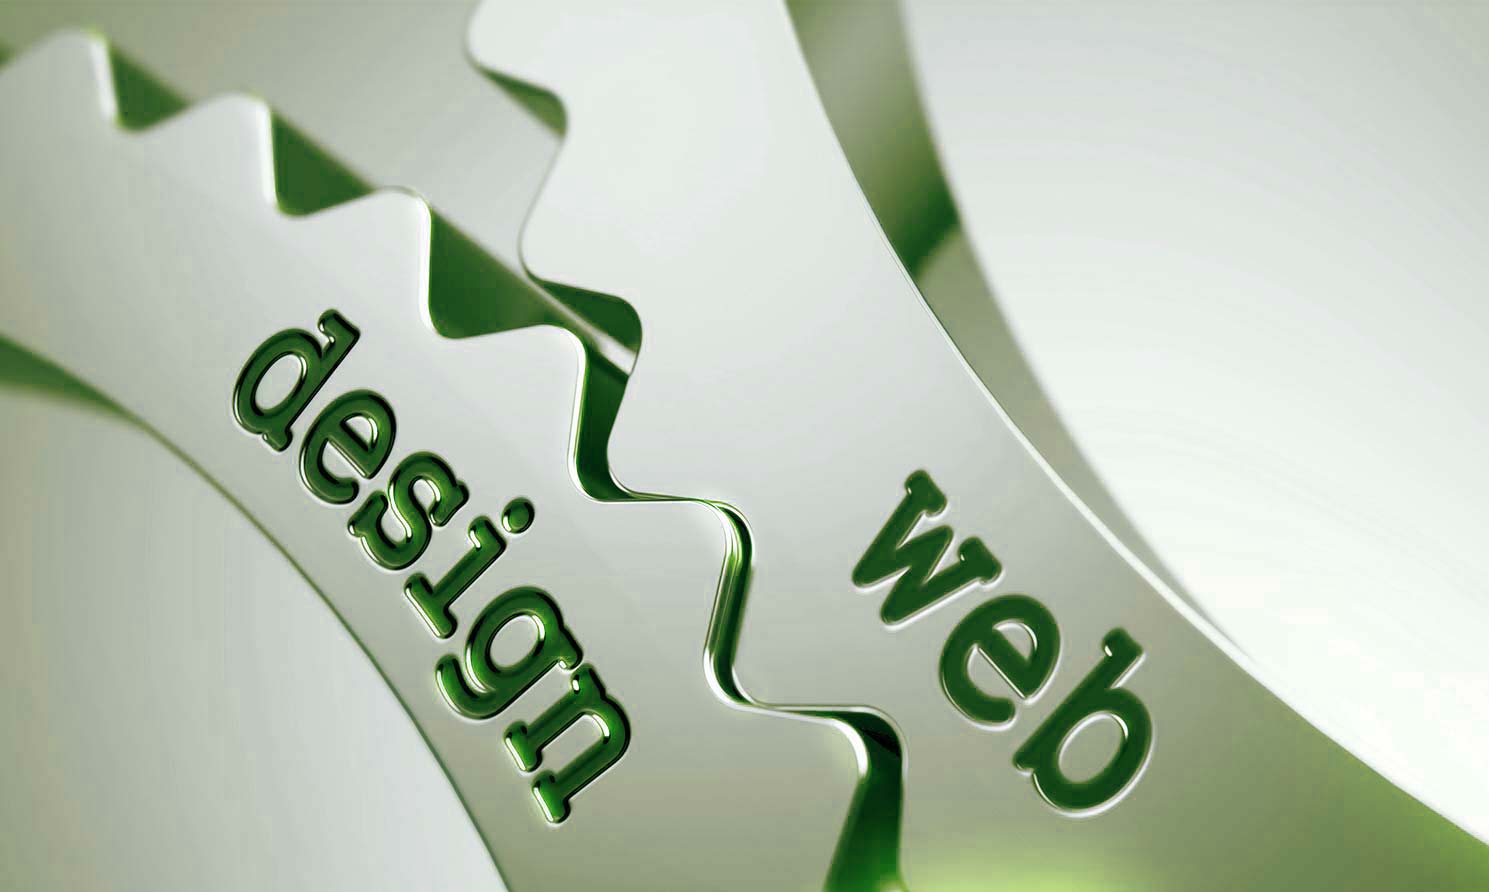 Corso di Web Design Avanzato